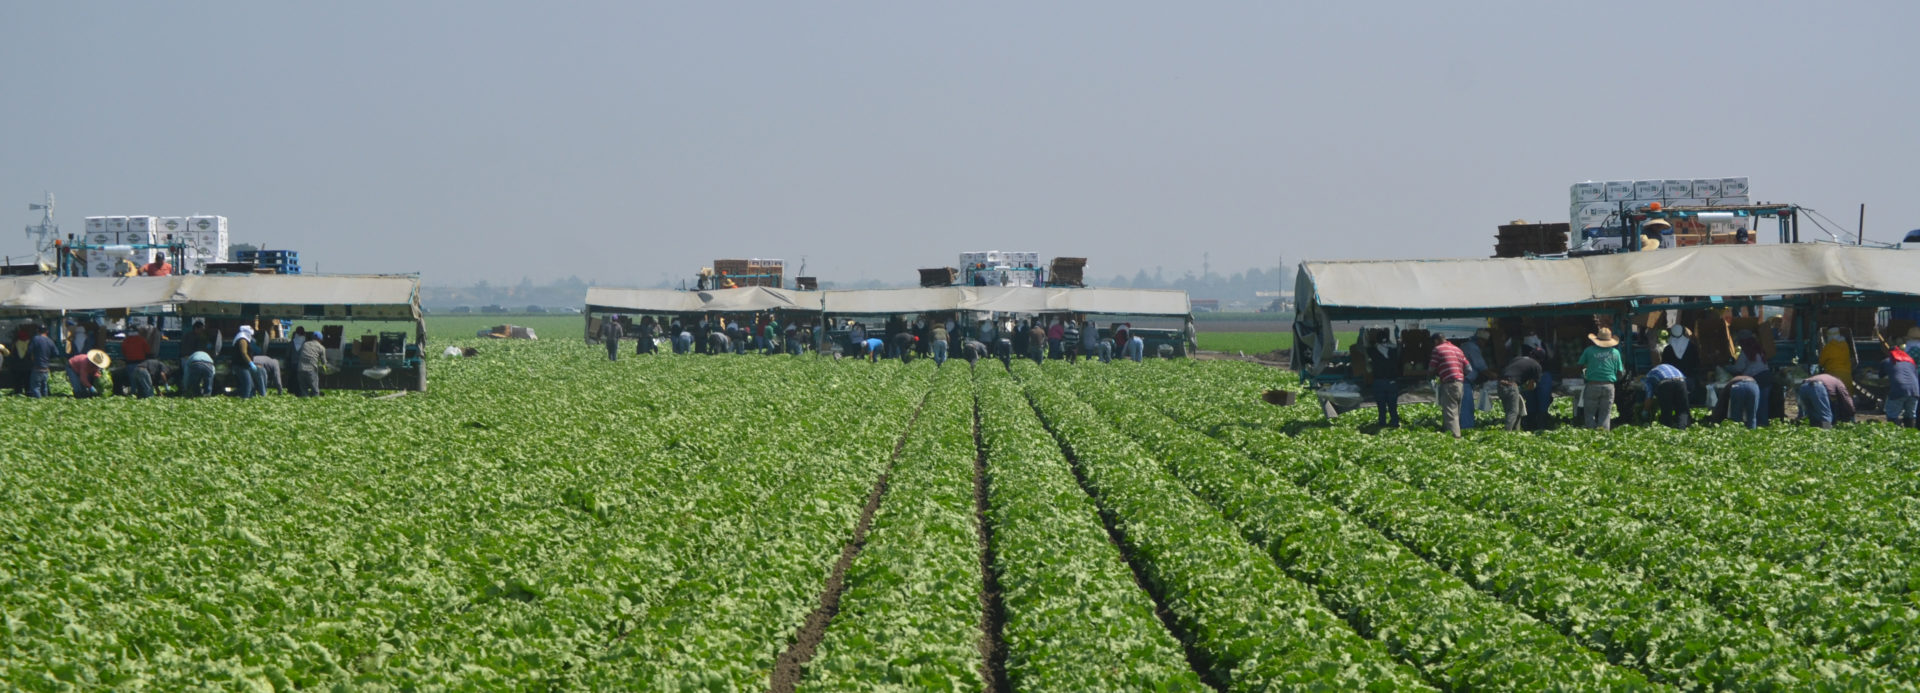 Salinas crops